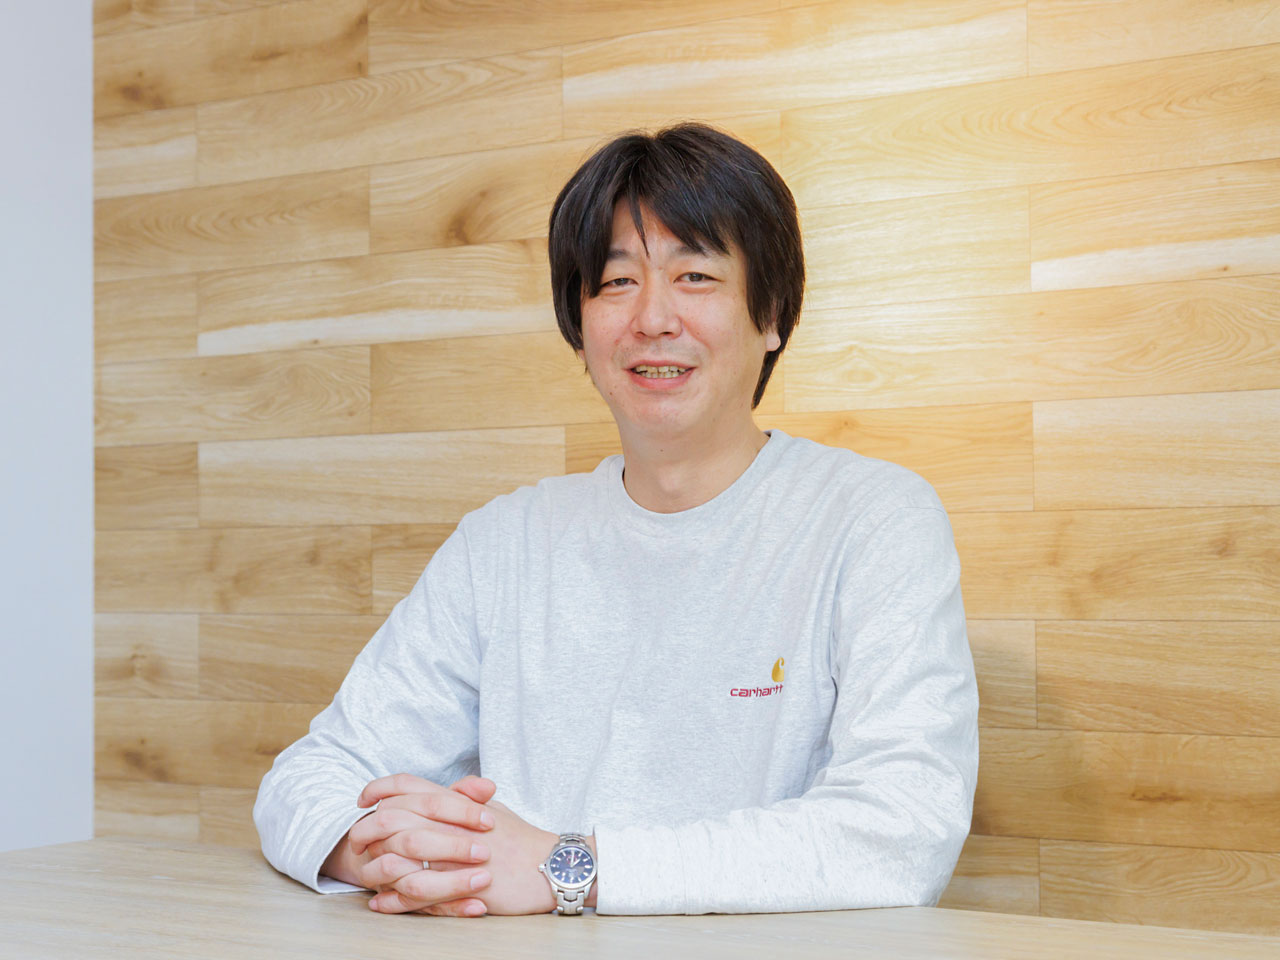 代表・山本亮太　大手SIerでの豊富な経験を活かし、2015年に独立しTakeFunSystemを設立。今年で8年目となり、設立以来着実に成長を続けている。